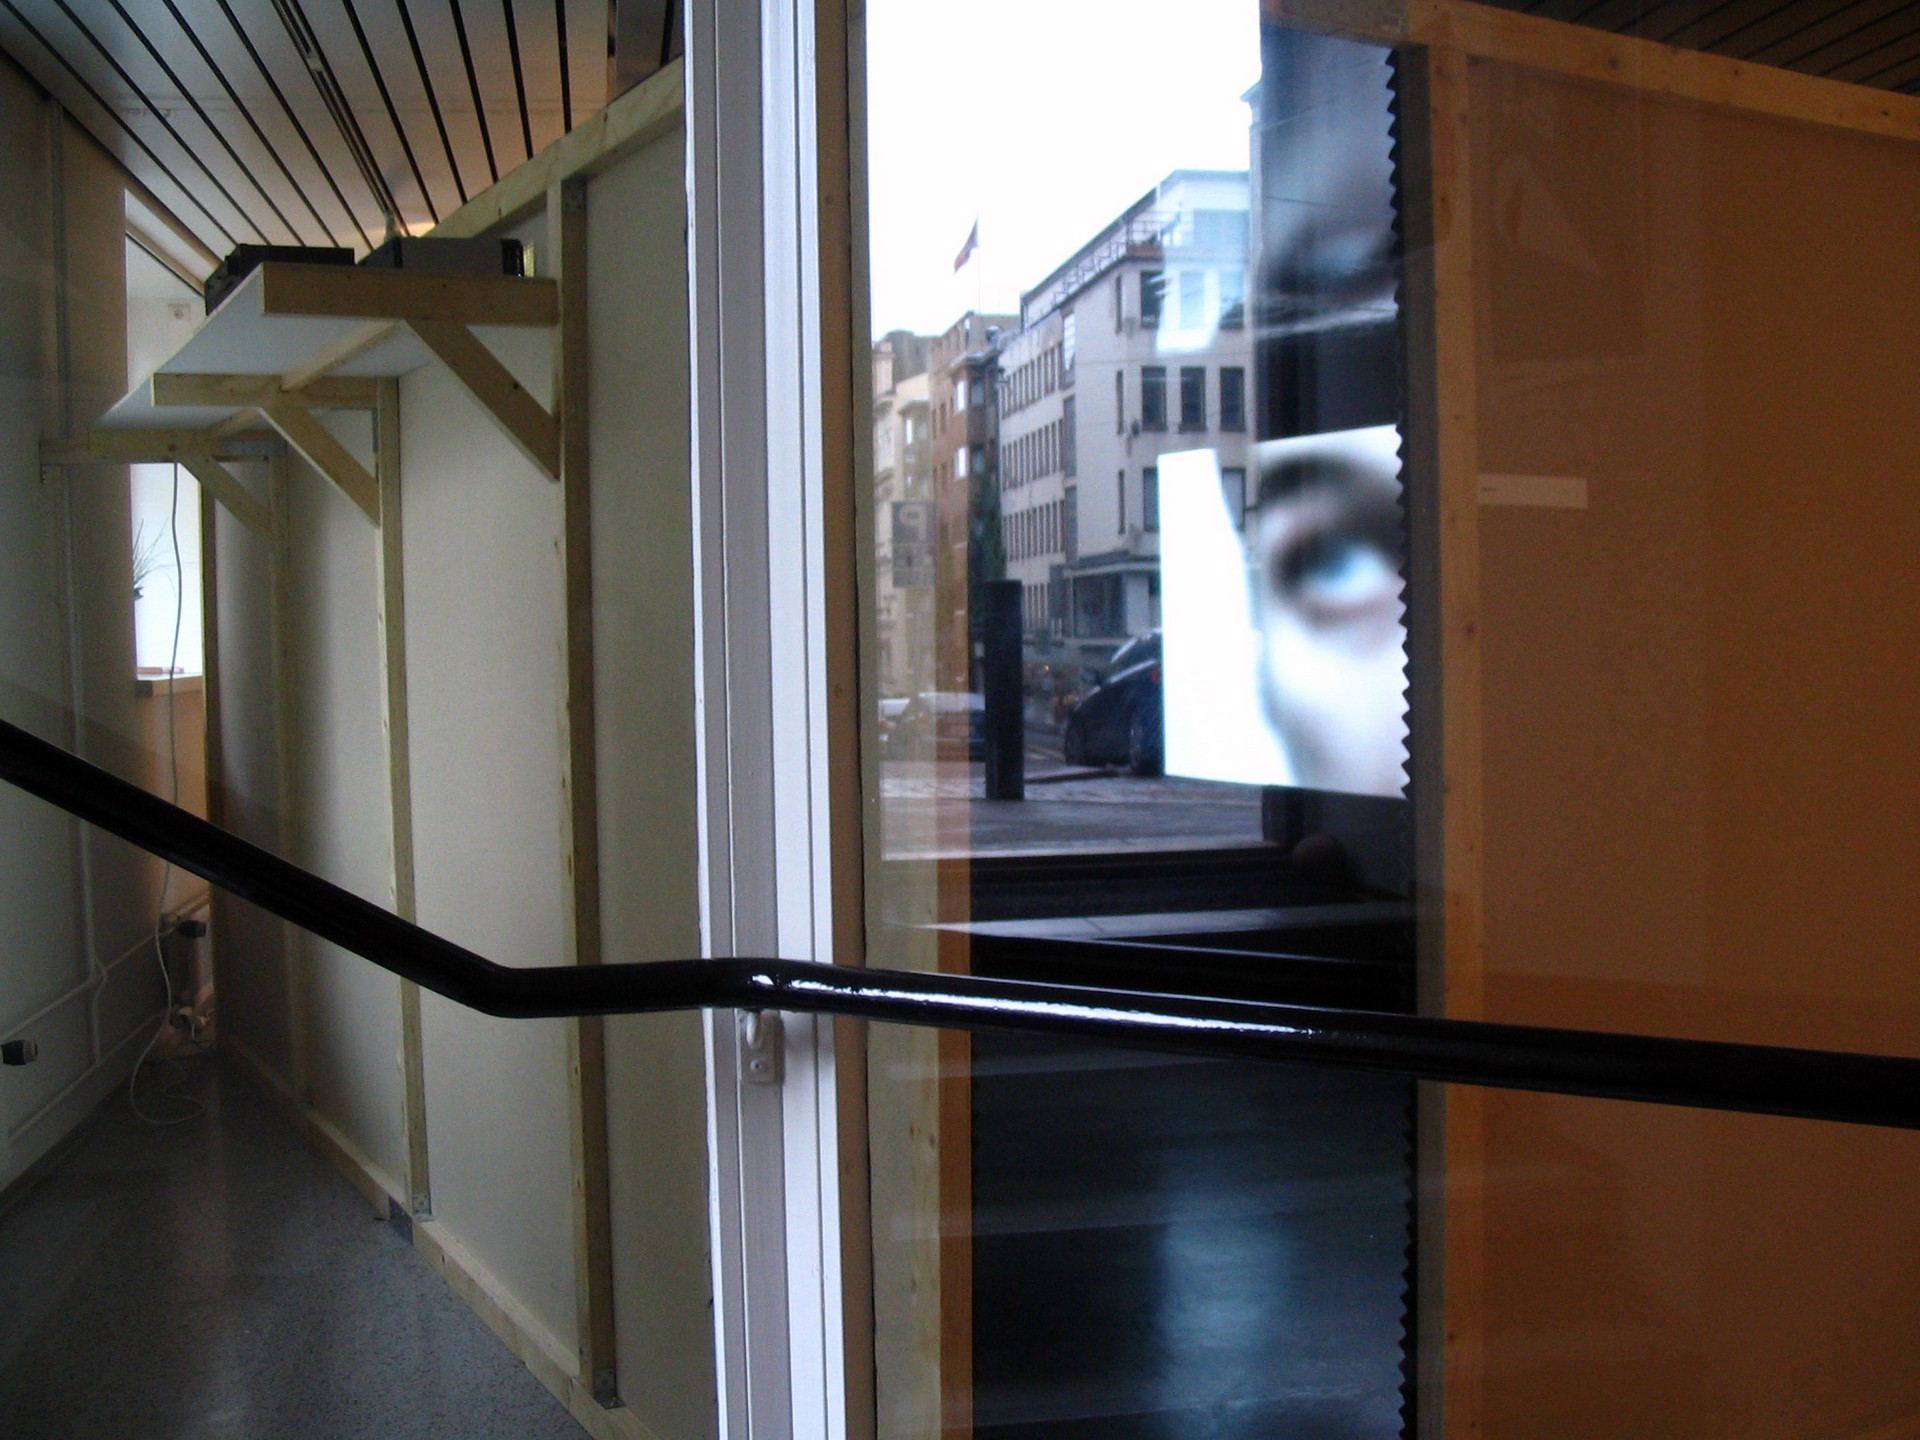 2005 Gallery Sinne, Helsinki, Finland